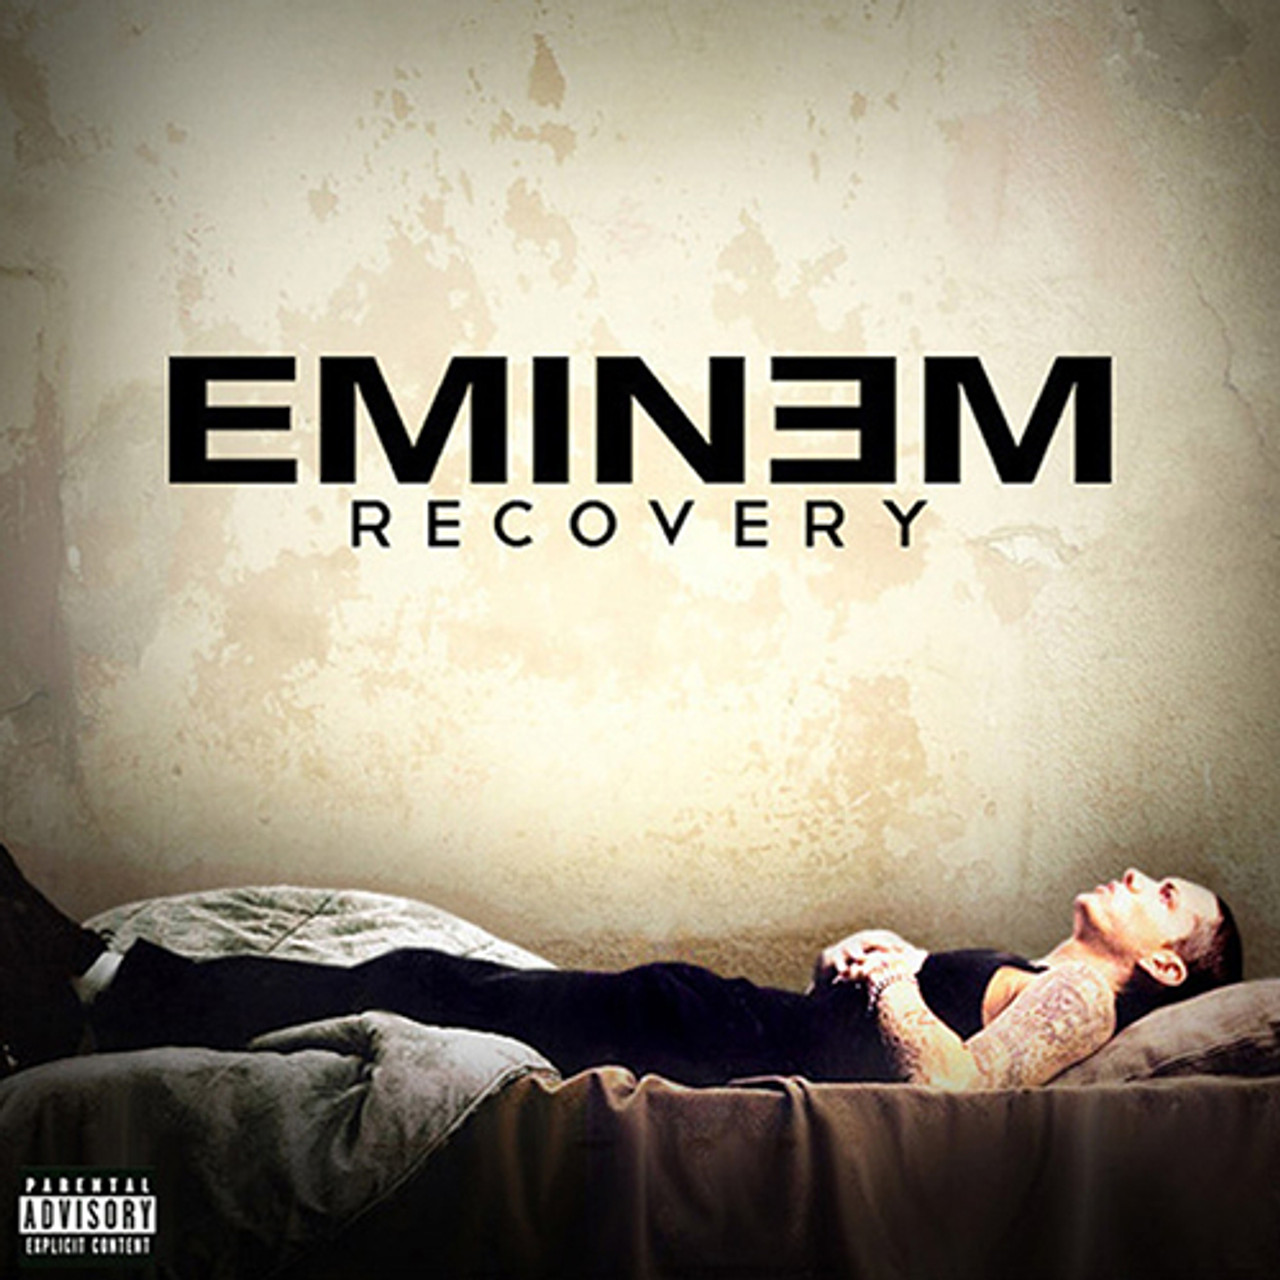 Recovery eminem clean edit music album  Eminem recovery album, Eminem  album covers, Eminem songs